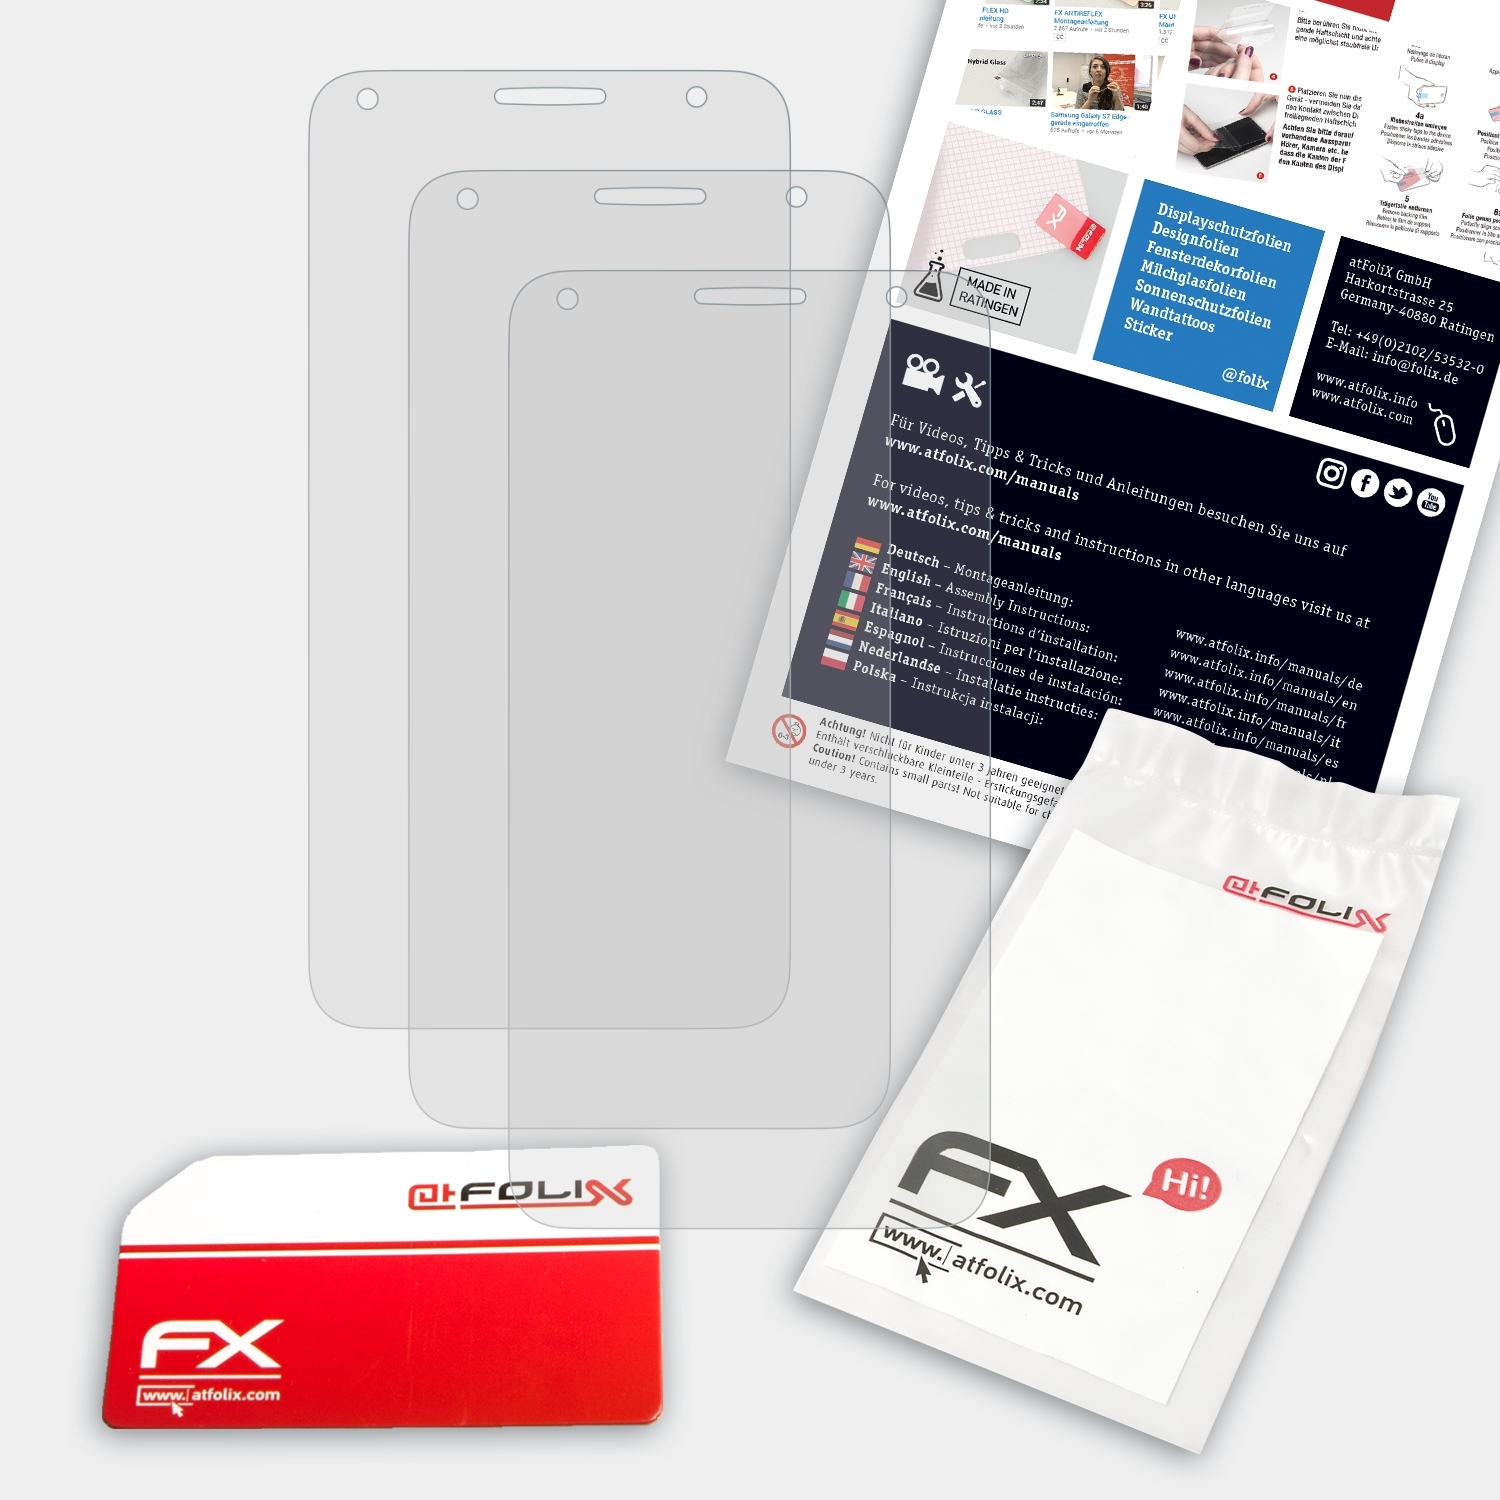 One (5)) 3x ATFOLIX Alcatel Displayschutz(für FX-Antireflex Touch 4 Pixi